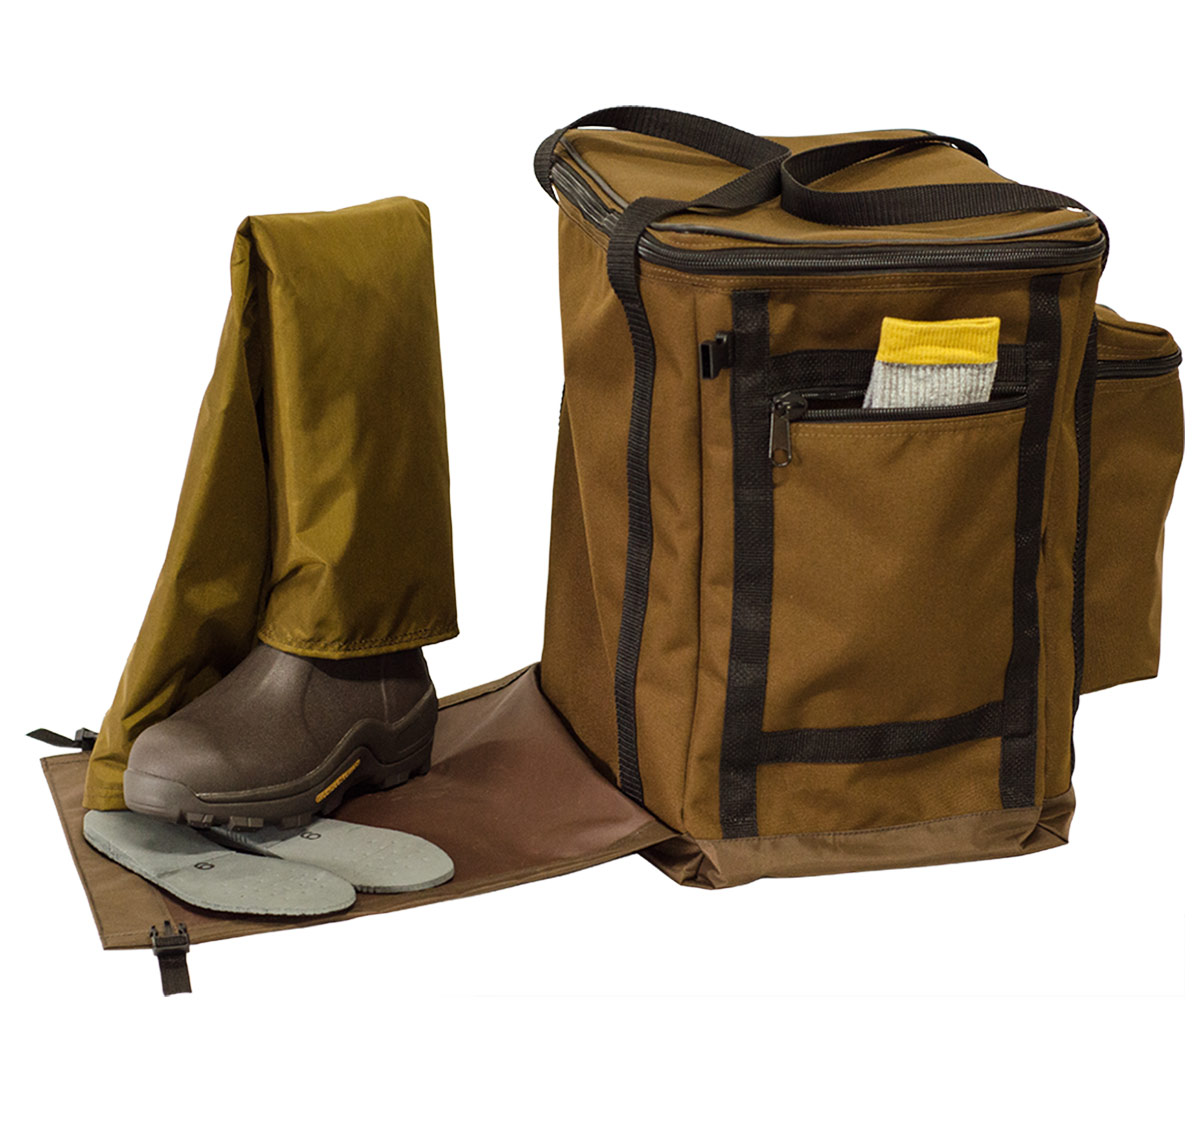 Dan's Boot (Wader) Bag #2200